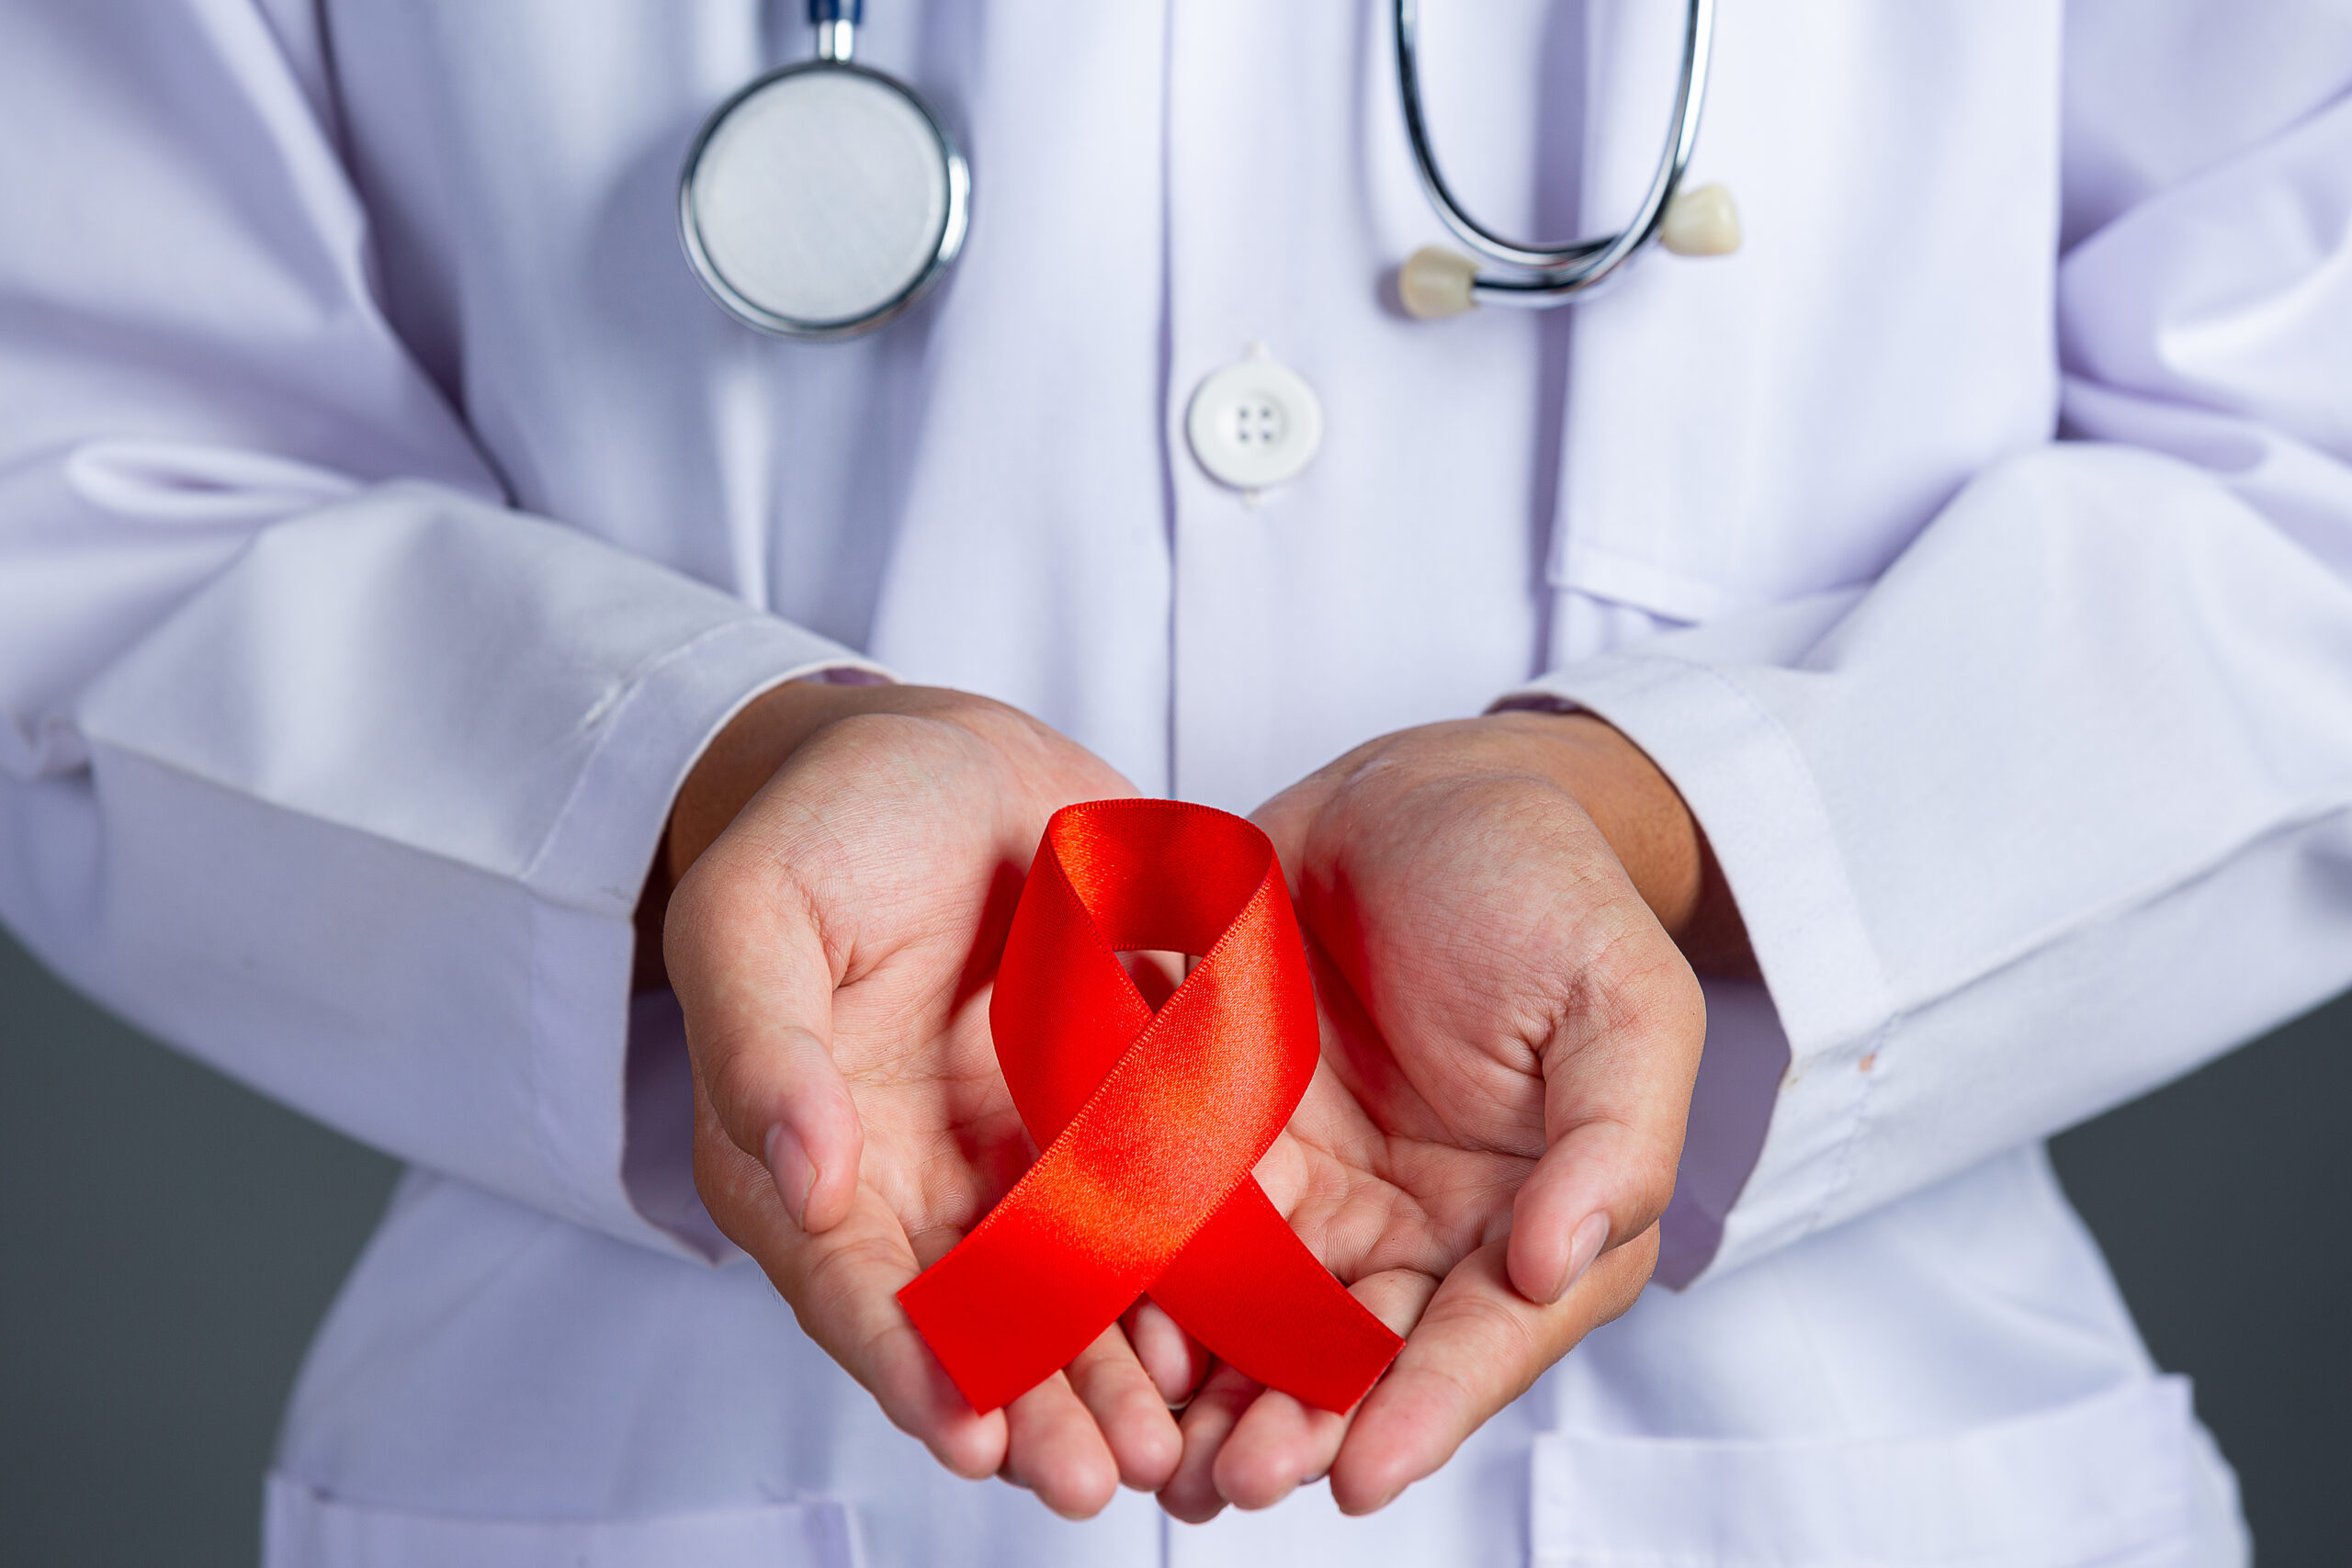 Πλεύρης: Πρόληψη και προστασία για άτομα με HIV